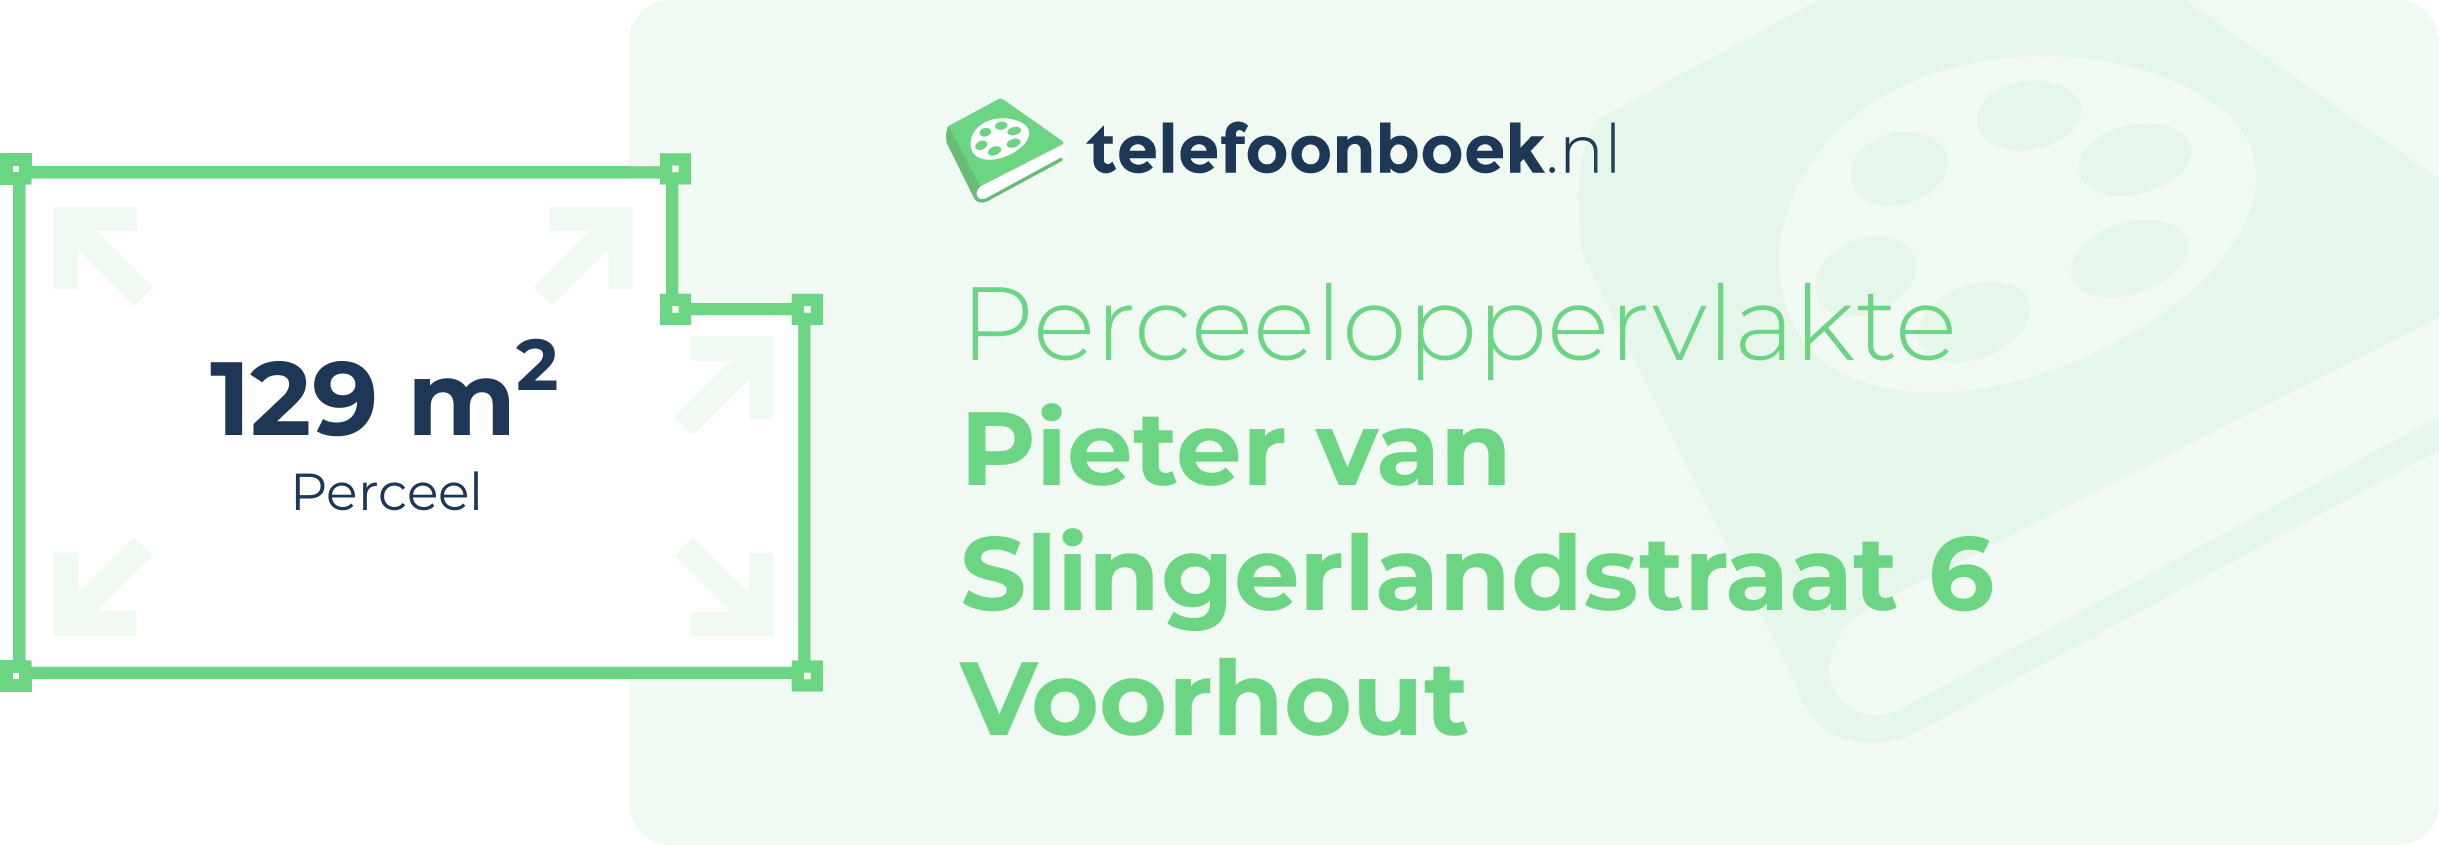 Perceeloppervlakte Pieter Van Slingerlandstraat 6 Voorhout